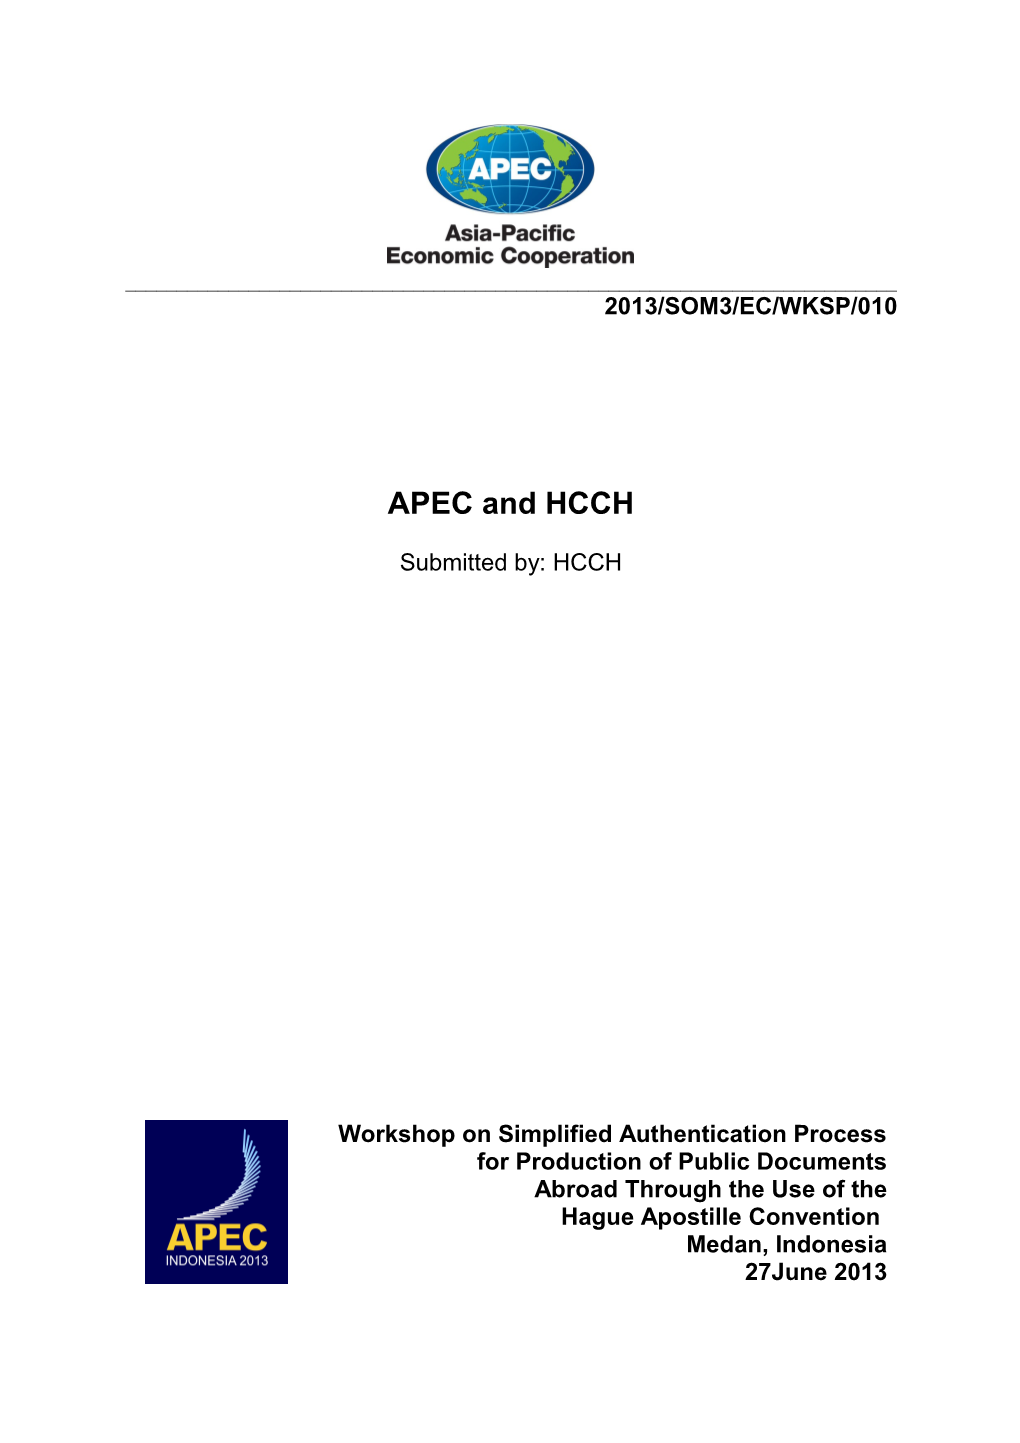 APEC Meeting Documents s6